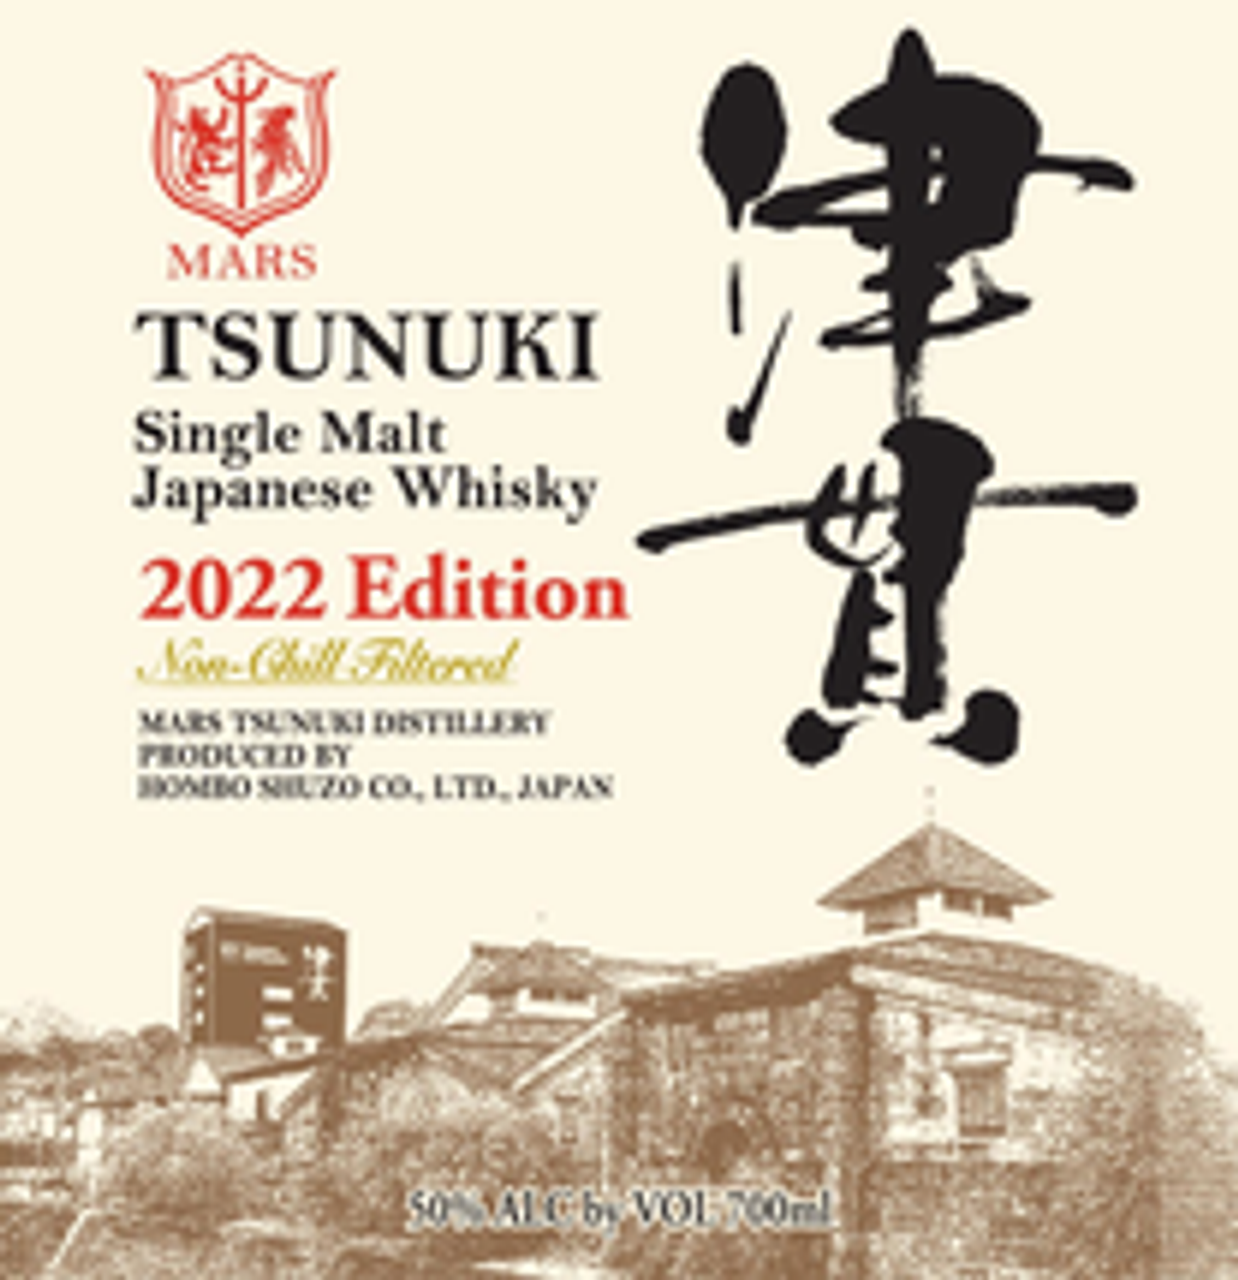 Mars Shinshu Tsunuki 2022 Edition